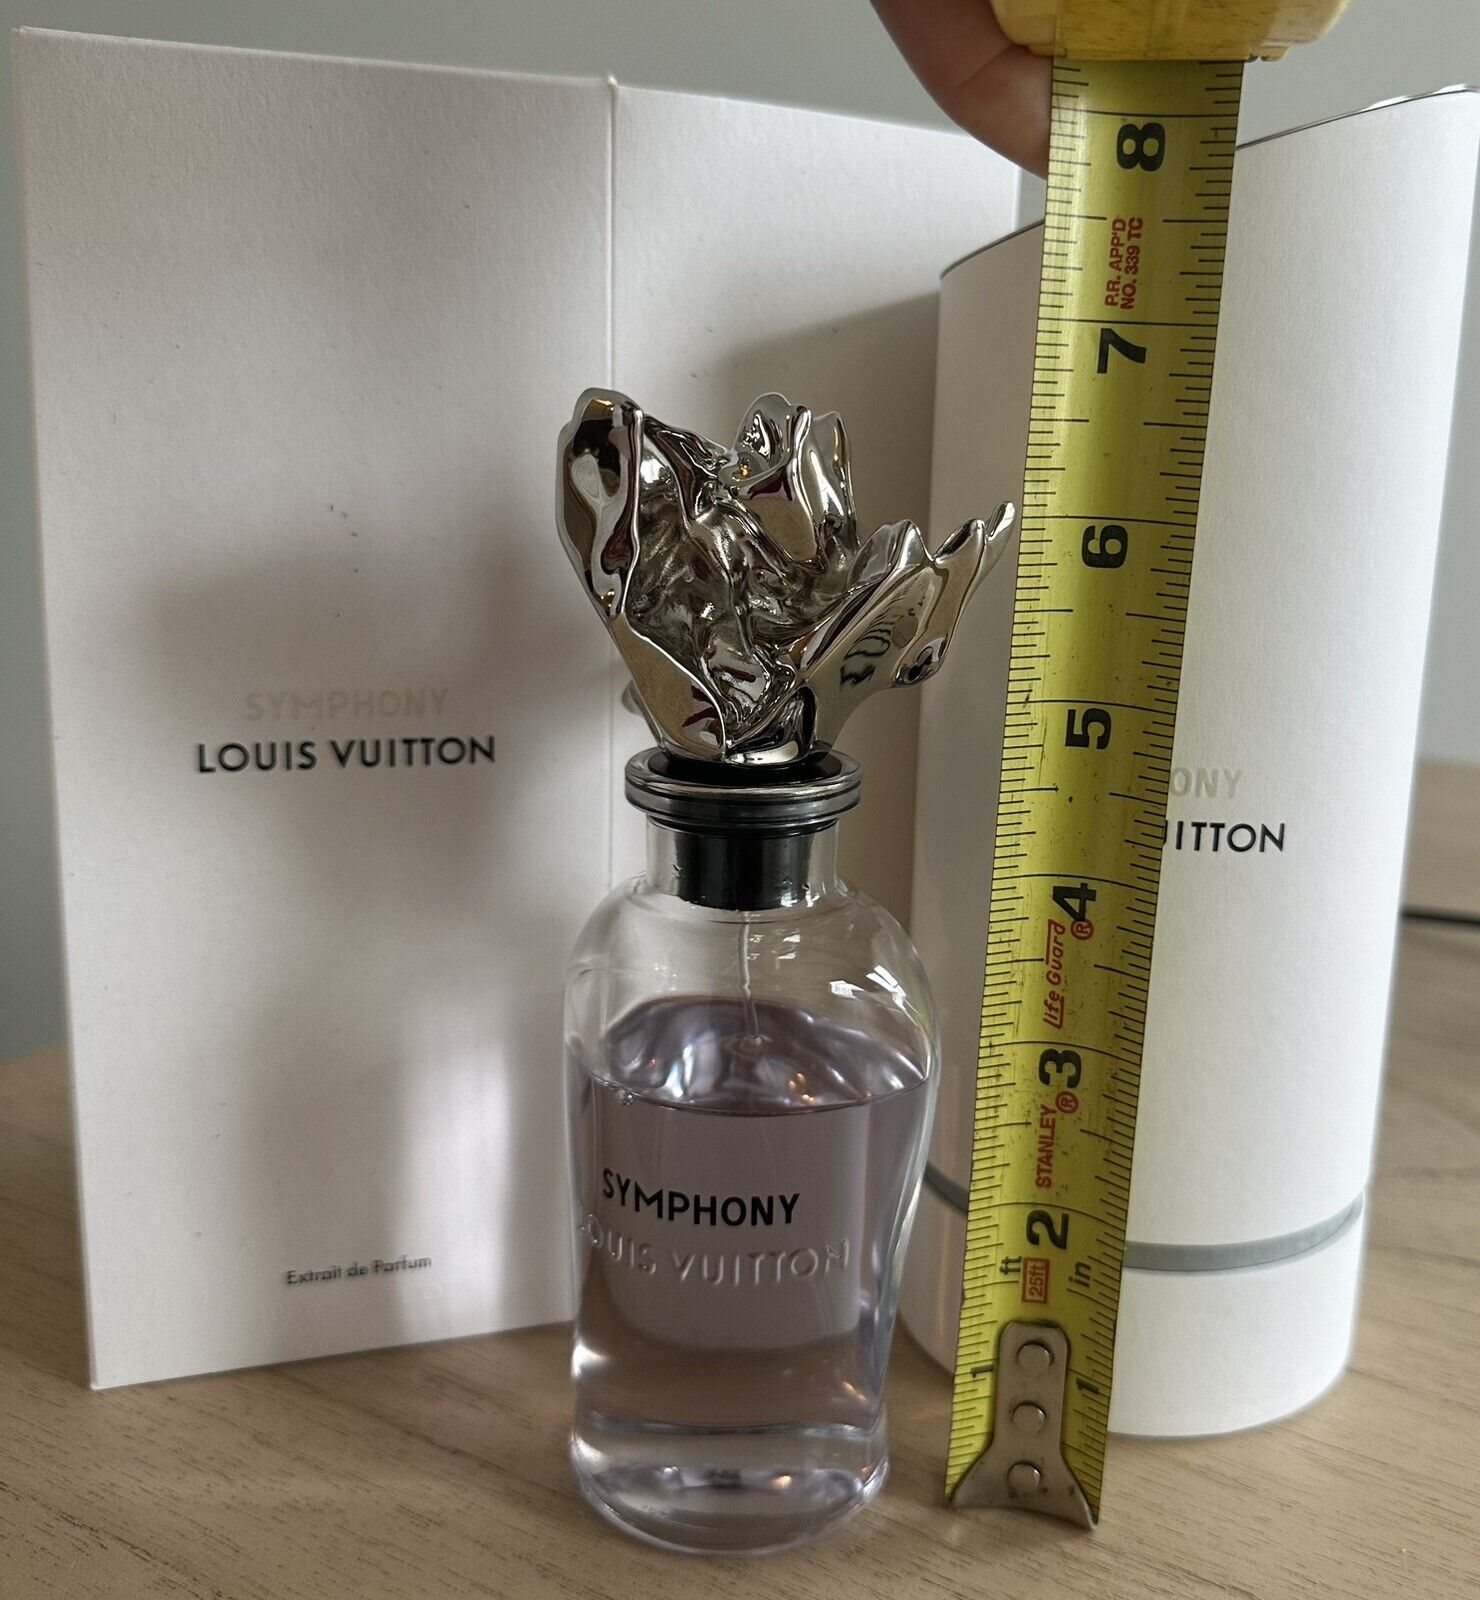 Louis Vuitton Symphony 100 ml parfum with sales receipt